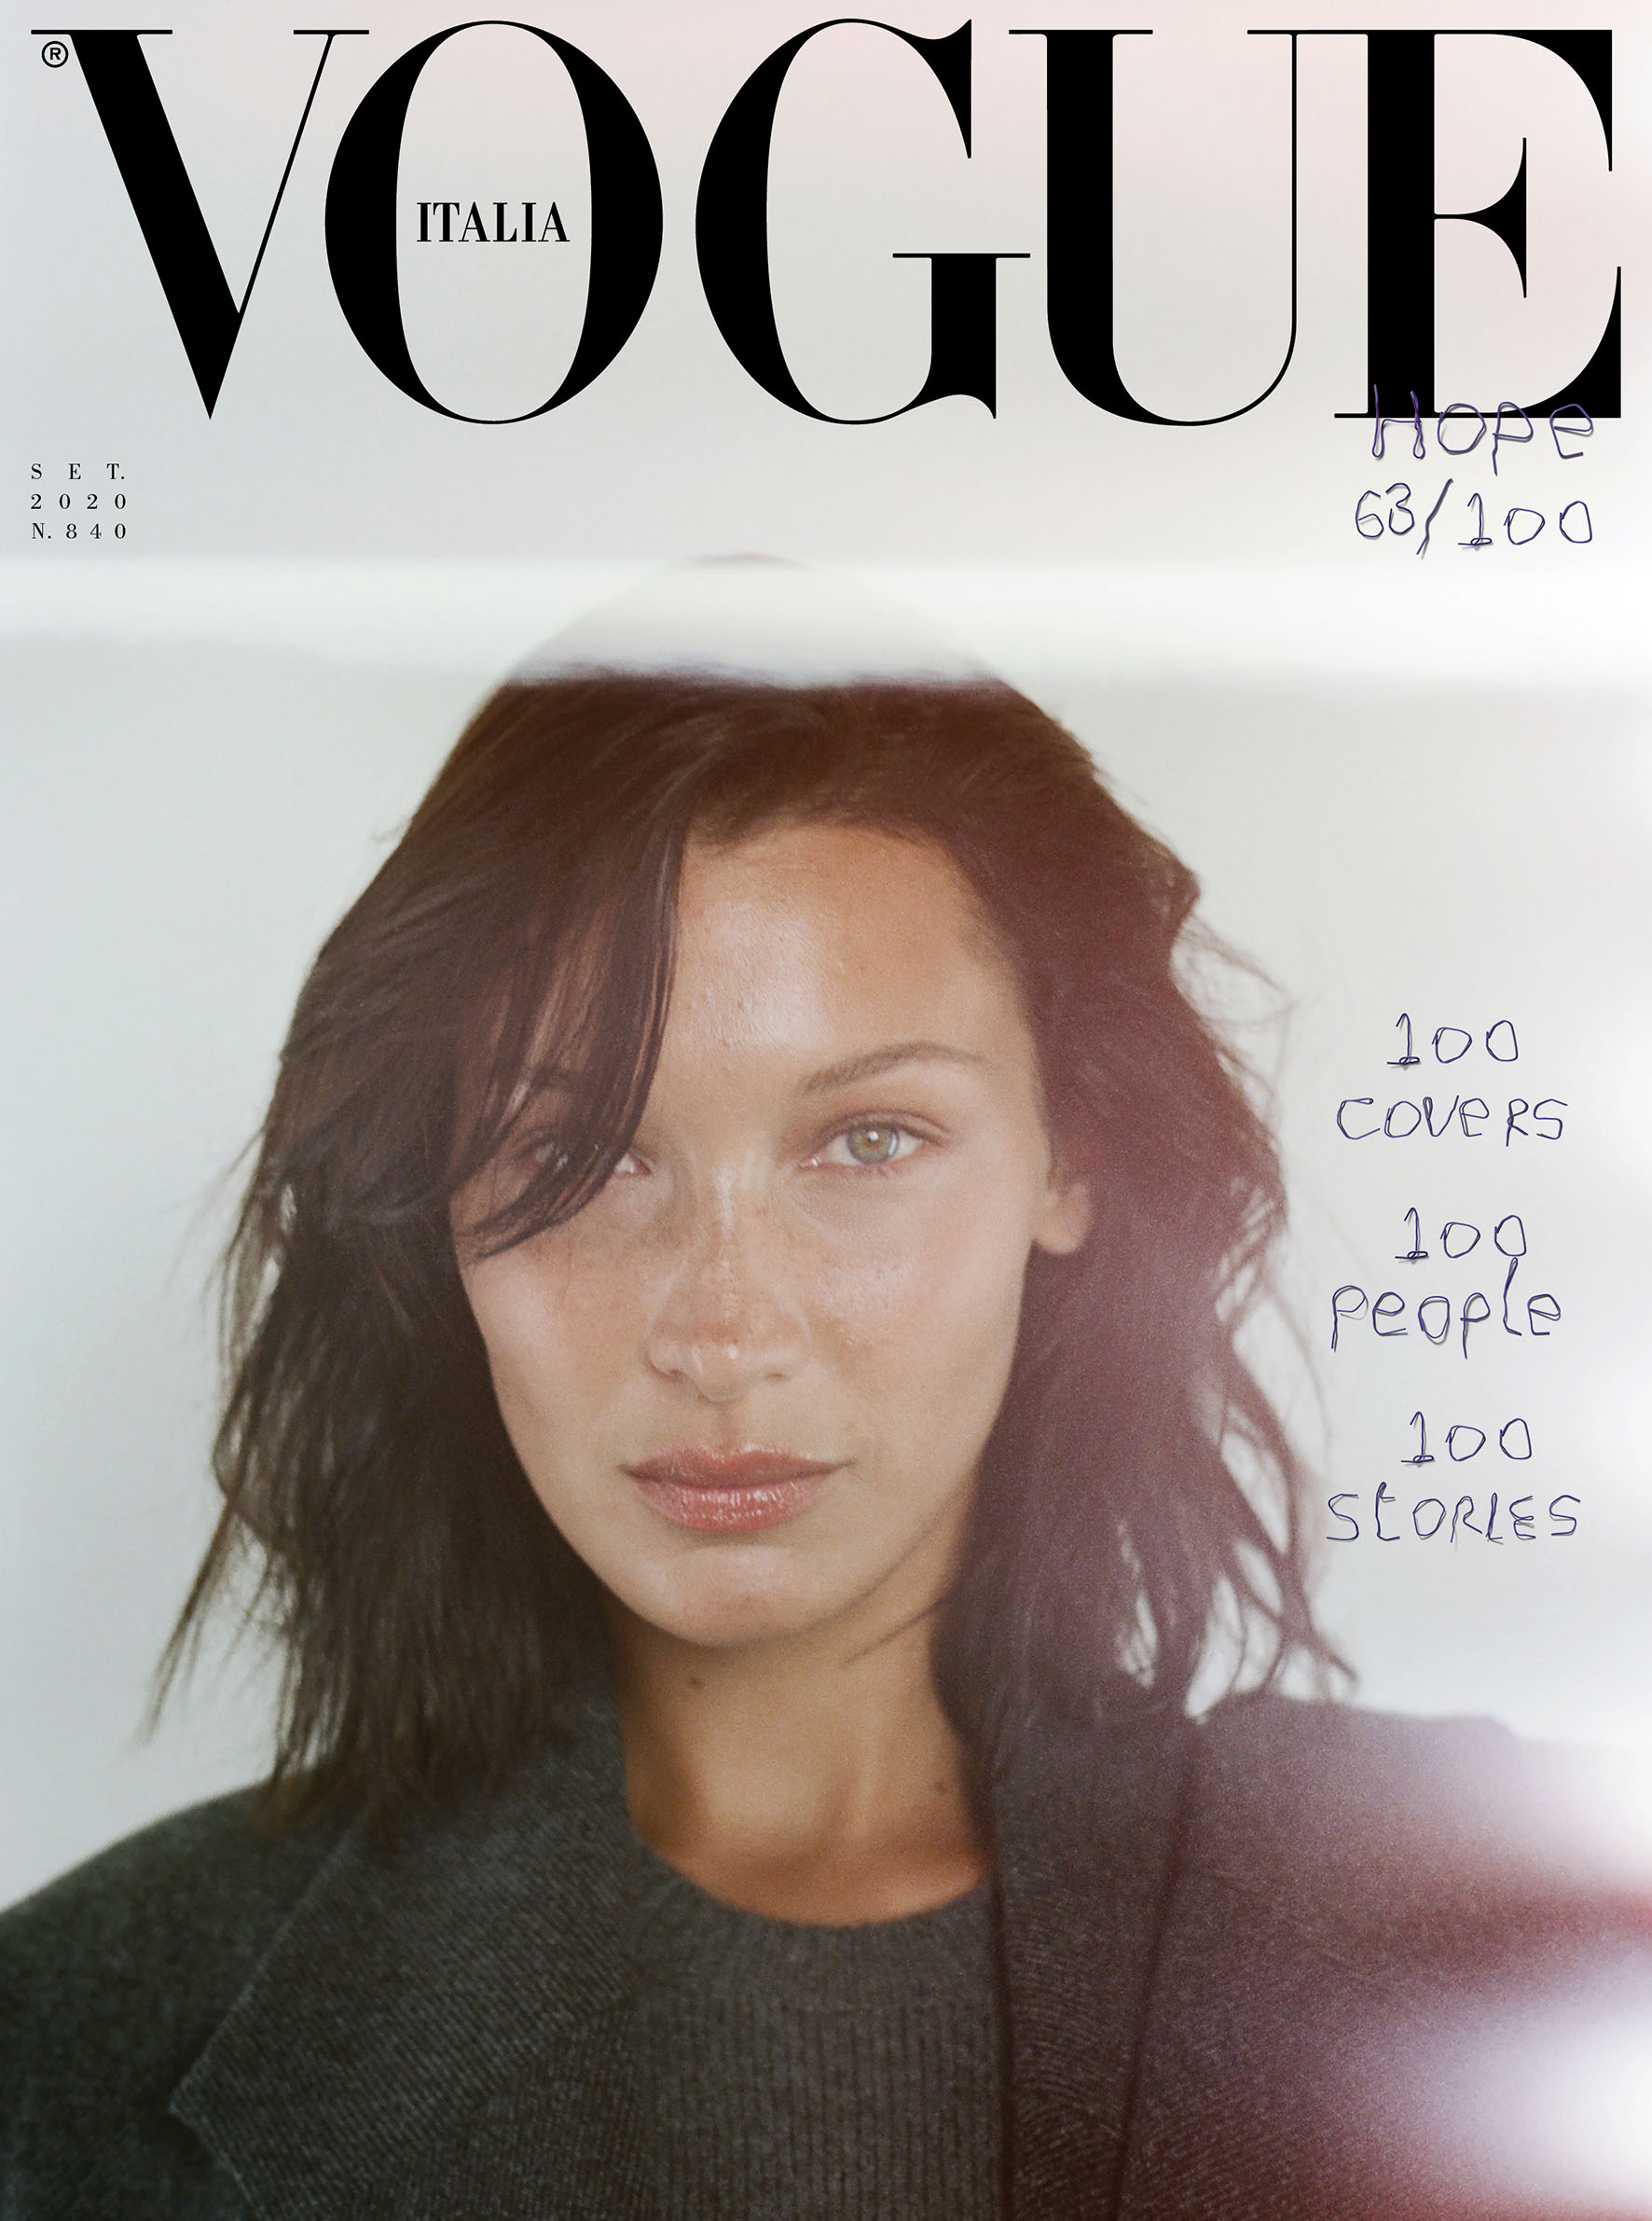 PHOTOS Les mannequins se runissent pour 100 couvertures De Vogue! - Photo 11